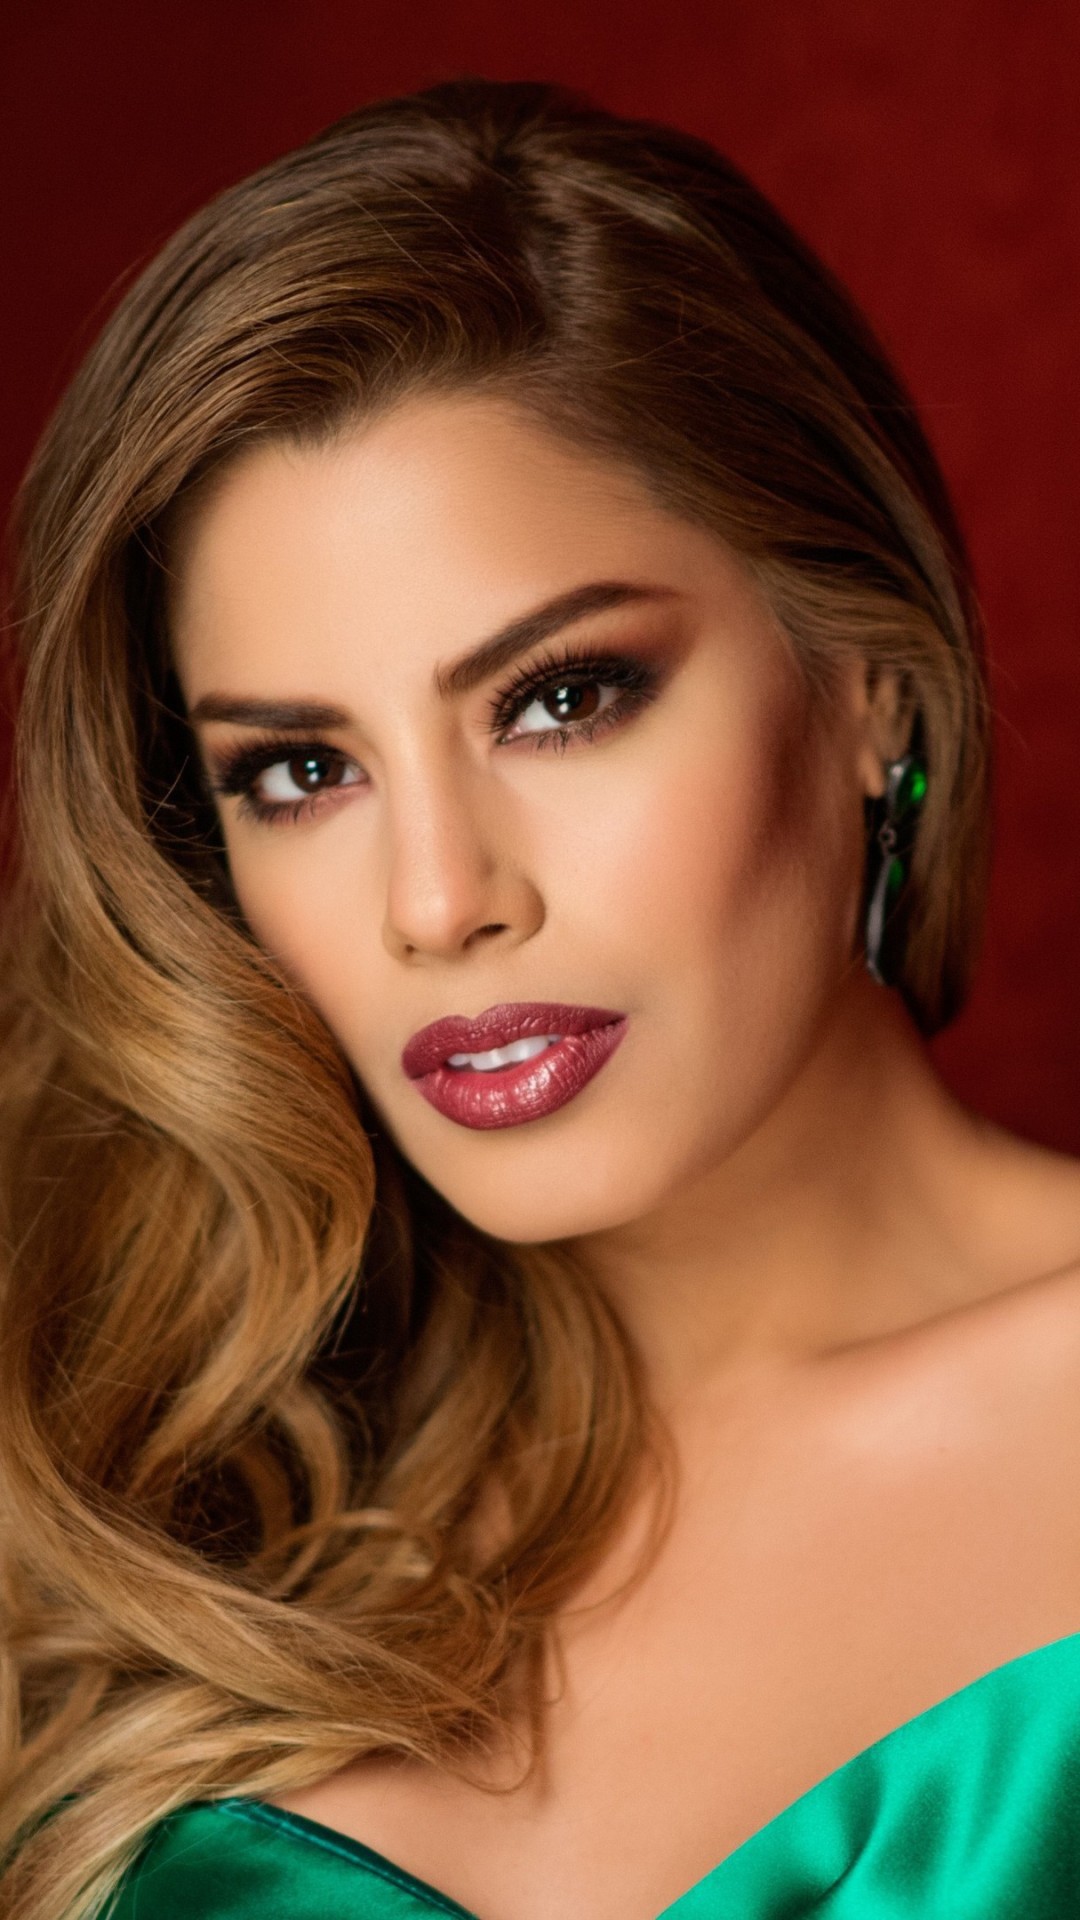 Wallpaper Ariadna Gutierrez Most Popular Celebs Model Actress Girls